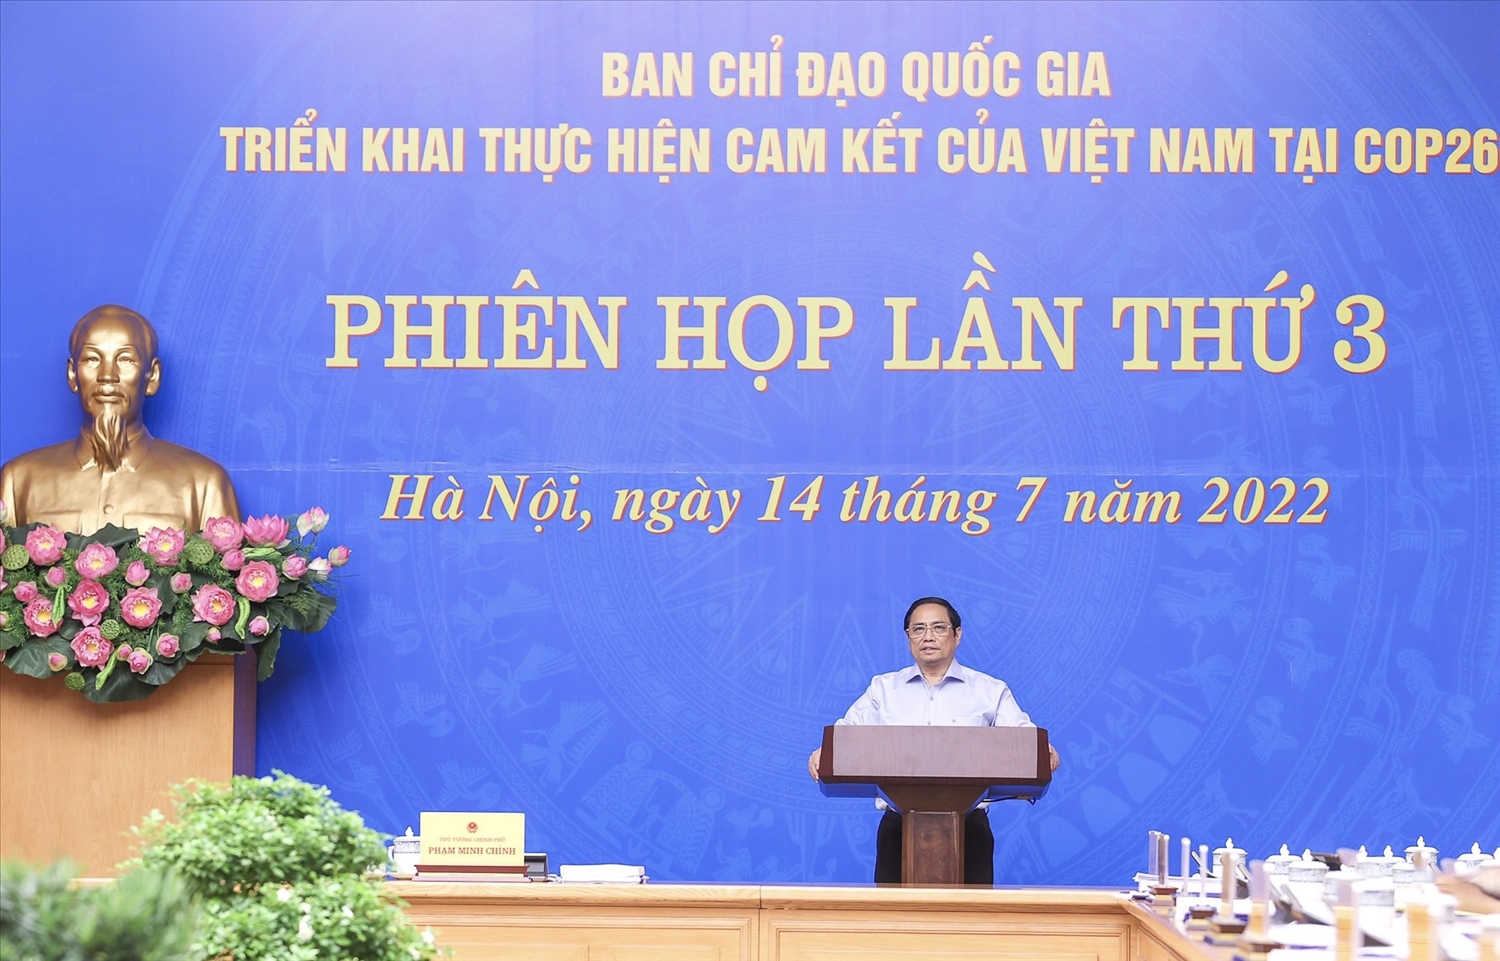 Thủ tướng Phạm Minh Chính đề nghị các đại biểu tập trung thảo luận, đánh giá những việc đã làm được, những việc chưa làm được sau phiên họp lần thứ 2 của Ban Chỉ đạo... để tháo gỡ khó khăn, vướng mắc, tạo thuận lợi cho việc thực hiện các cam kết của Việt Nam tại COP26 - Ảnh: VGP/Nhật Bắc